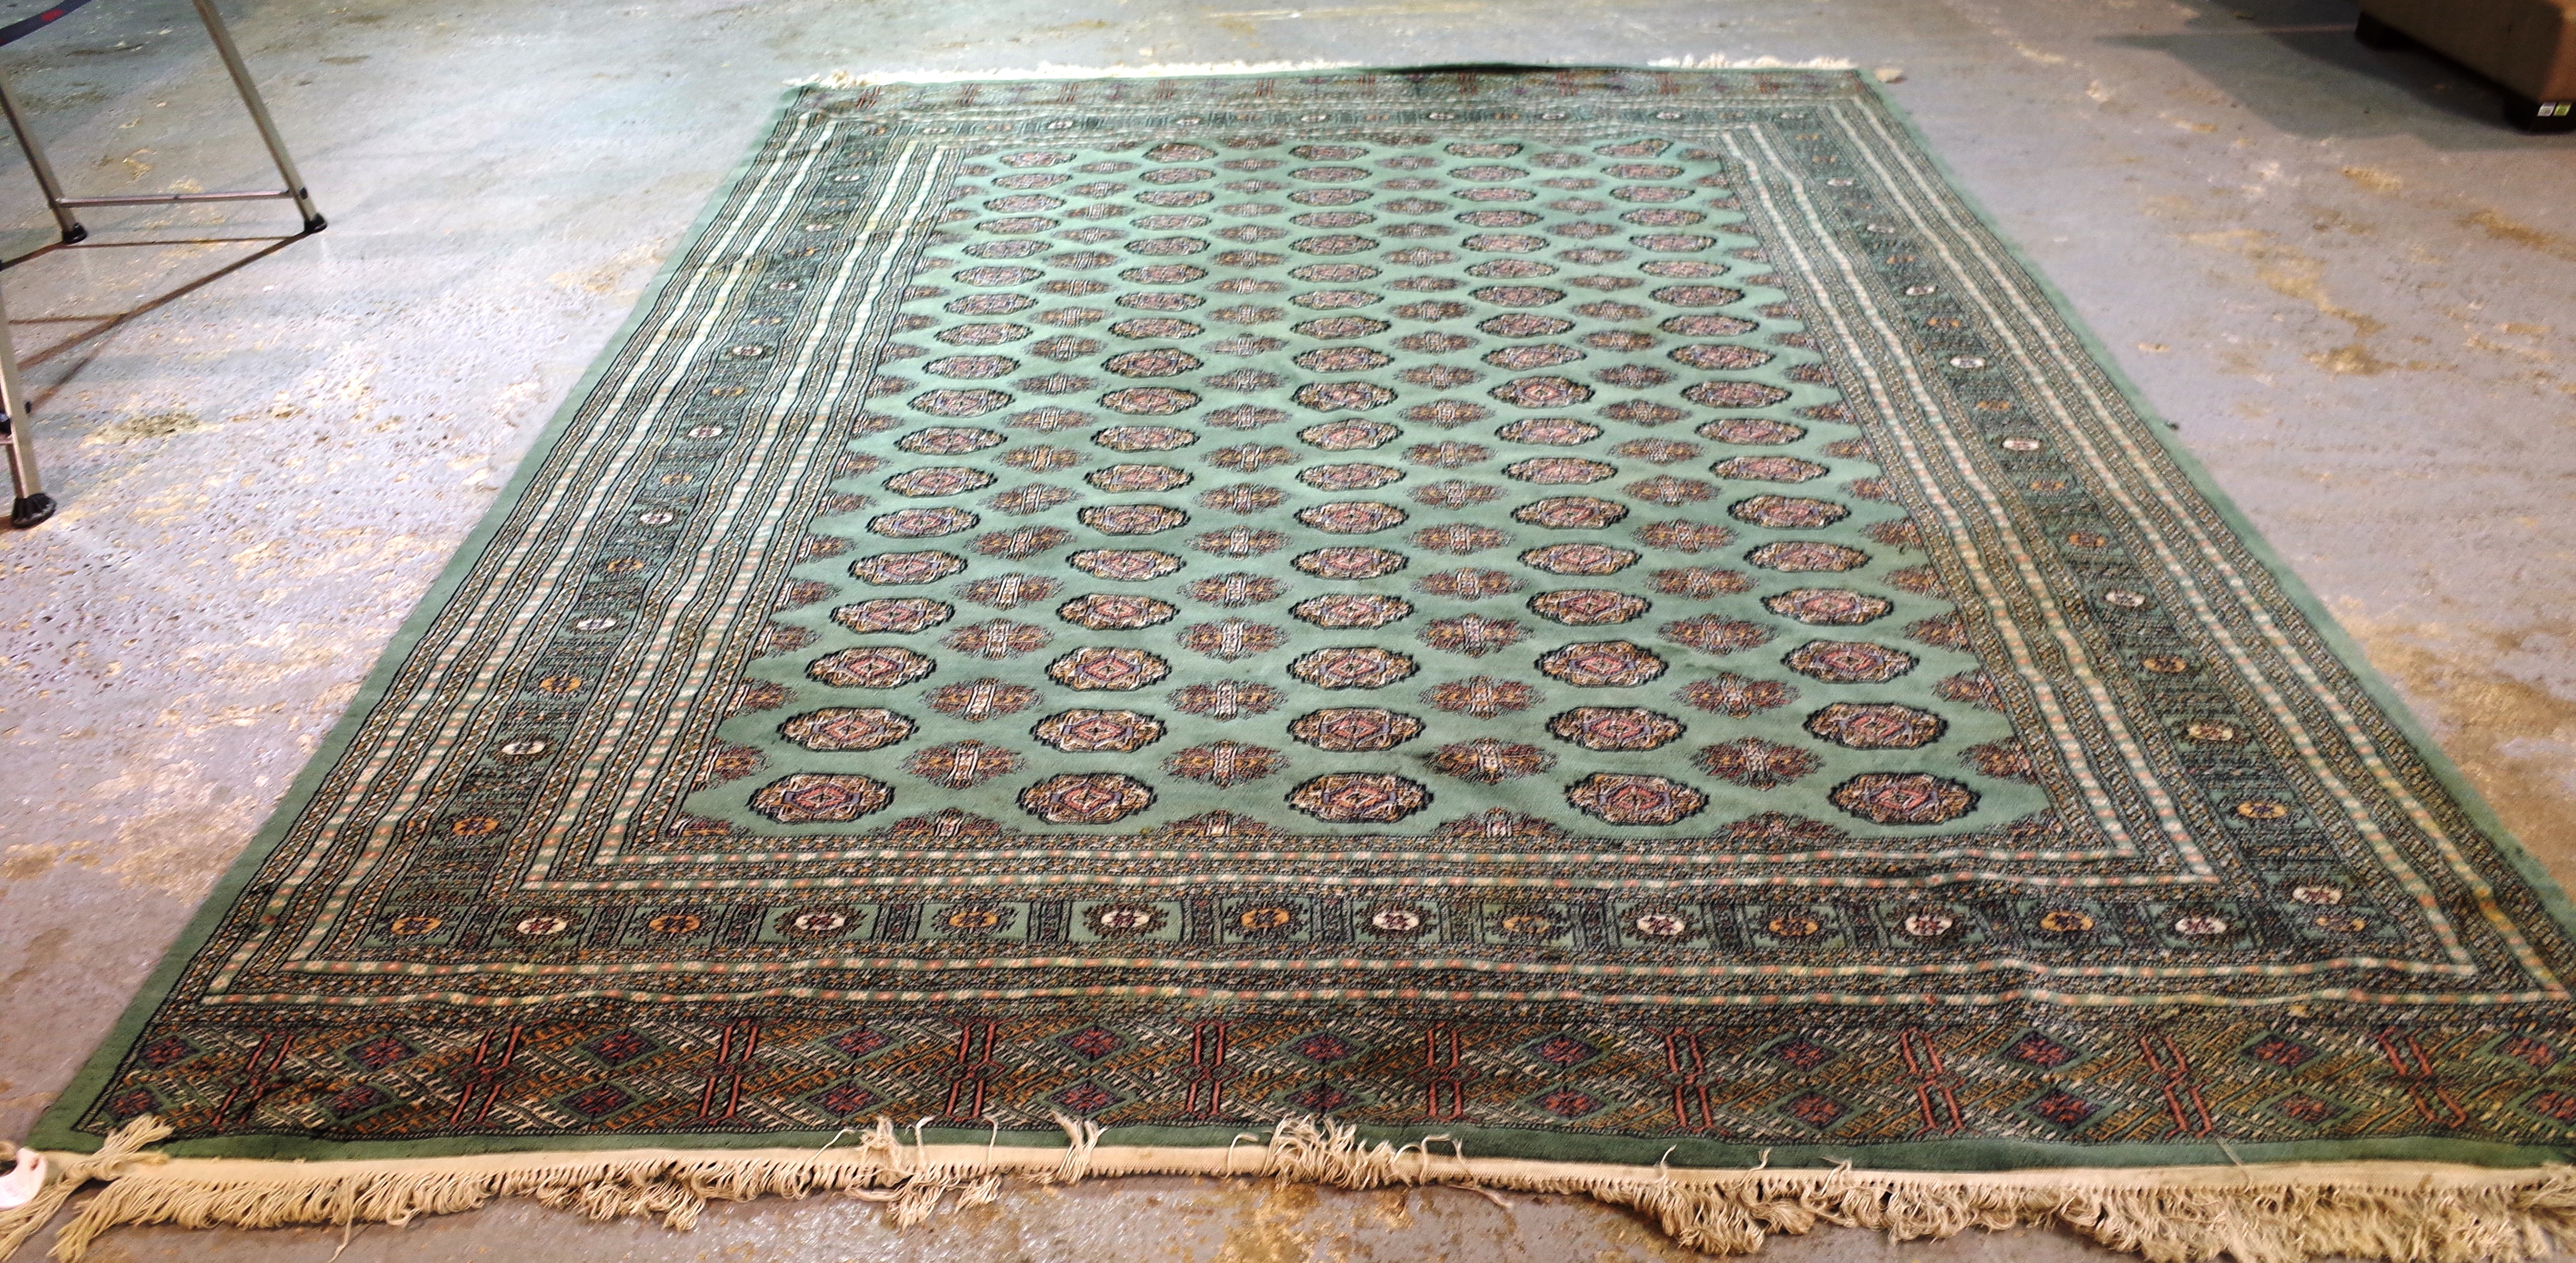 A green Pakistan Bokhara carpet, 380cm x 278cm.